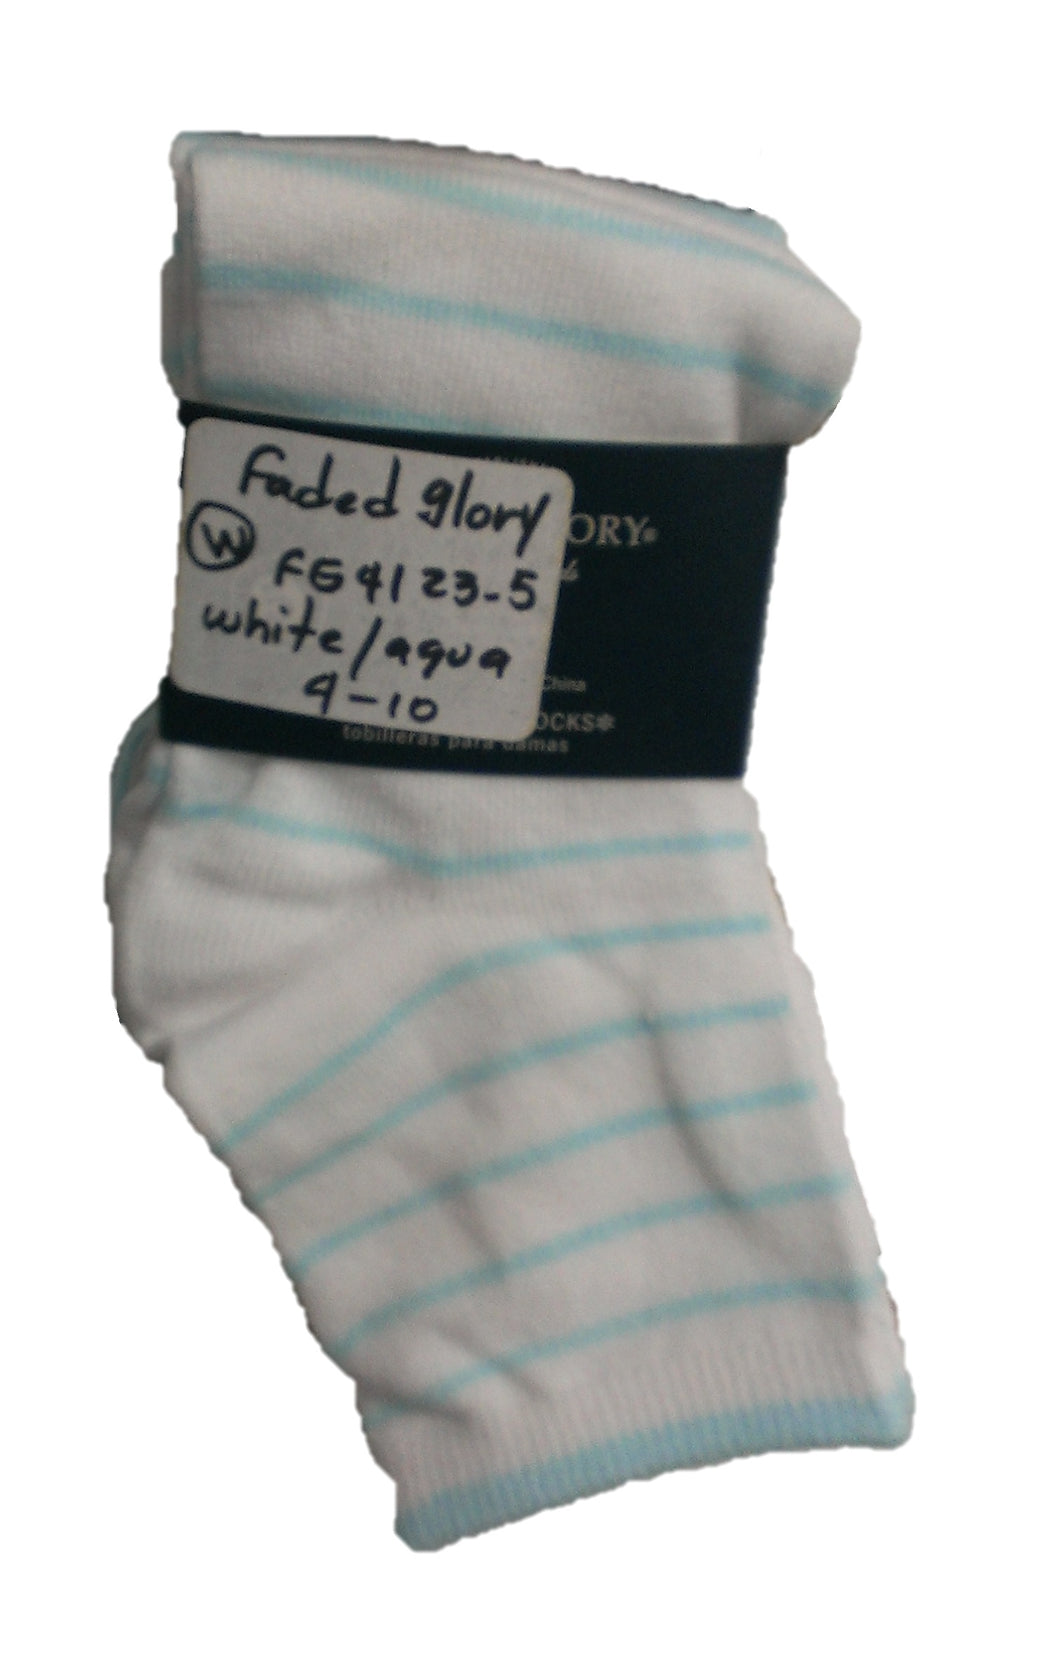 Ladies Ankle Socks Style FG4123-5